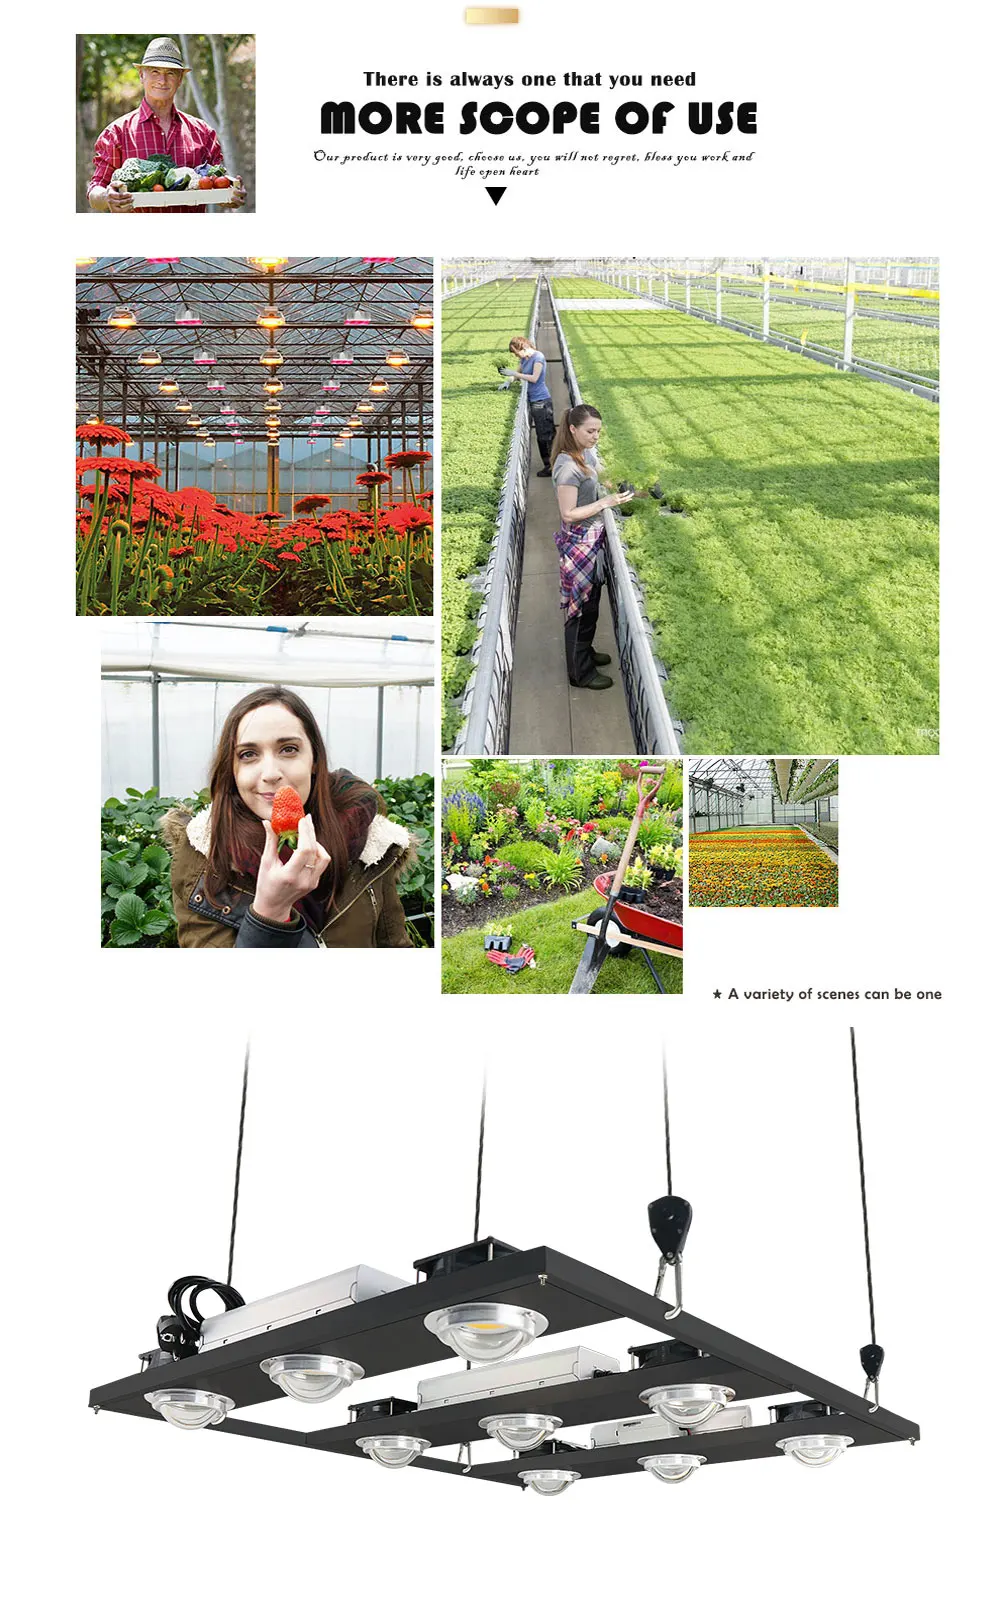 900 Вт CREE COB светодиодный светильник для выращивания, полный спектр комнатных растений, светильник для выращивания растений с УФ и ИК-подсветкой для комнатных растений, овощей и цветов